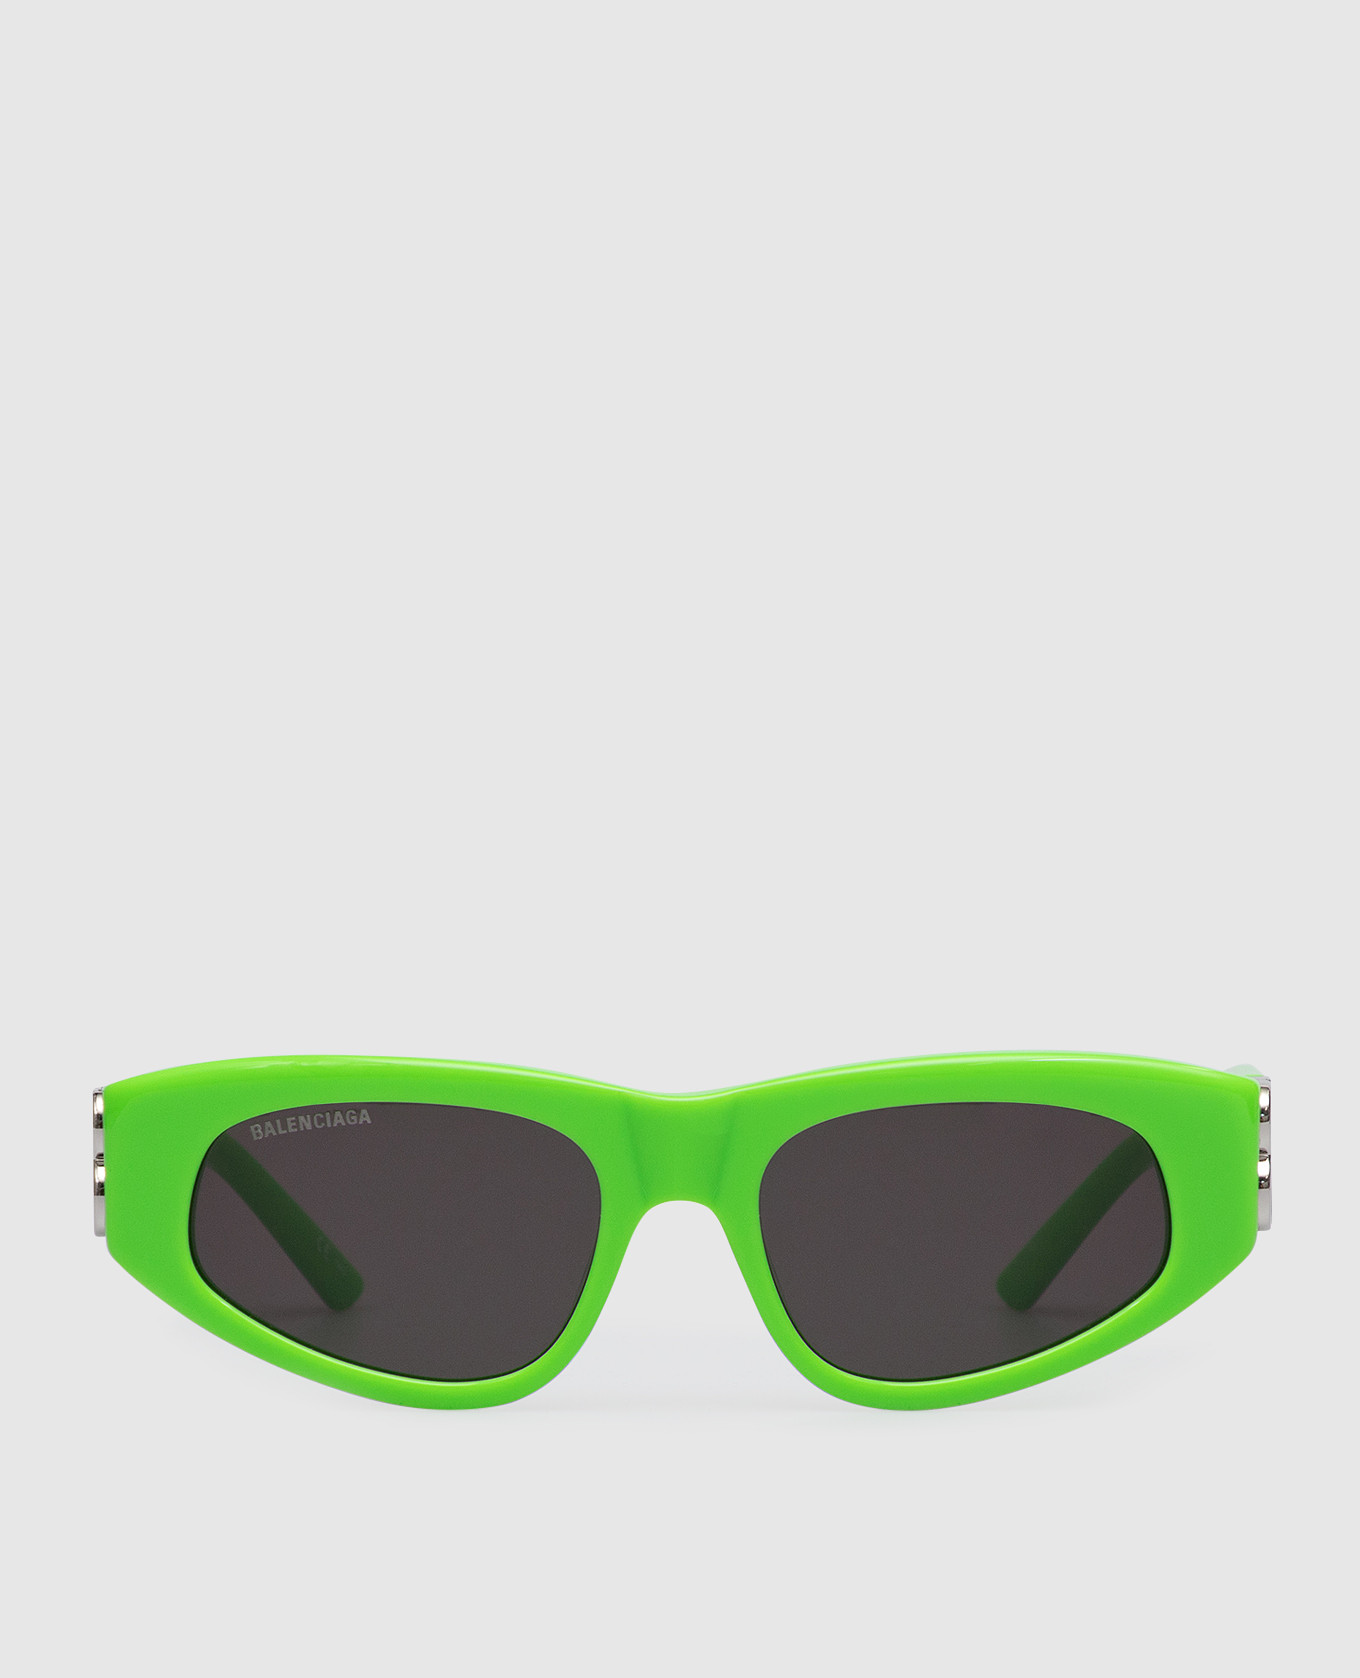 Неоново-зеленые солнцезащитные очки Dynasty с монограммой ВВ